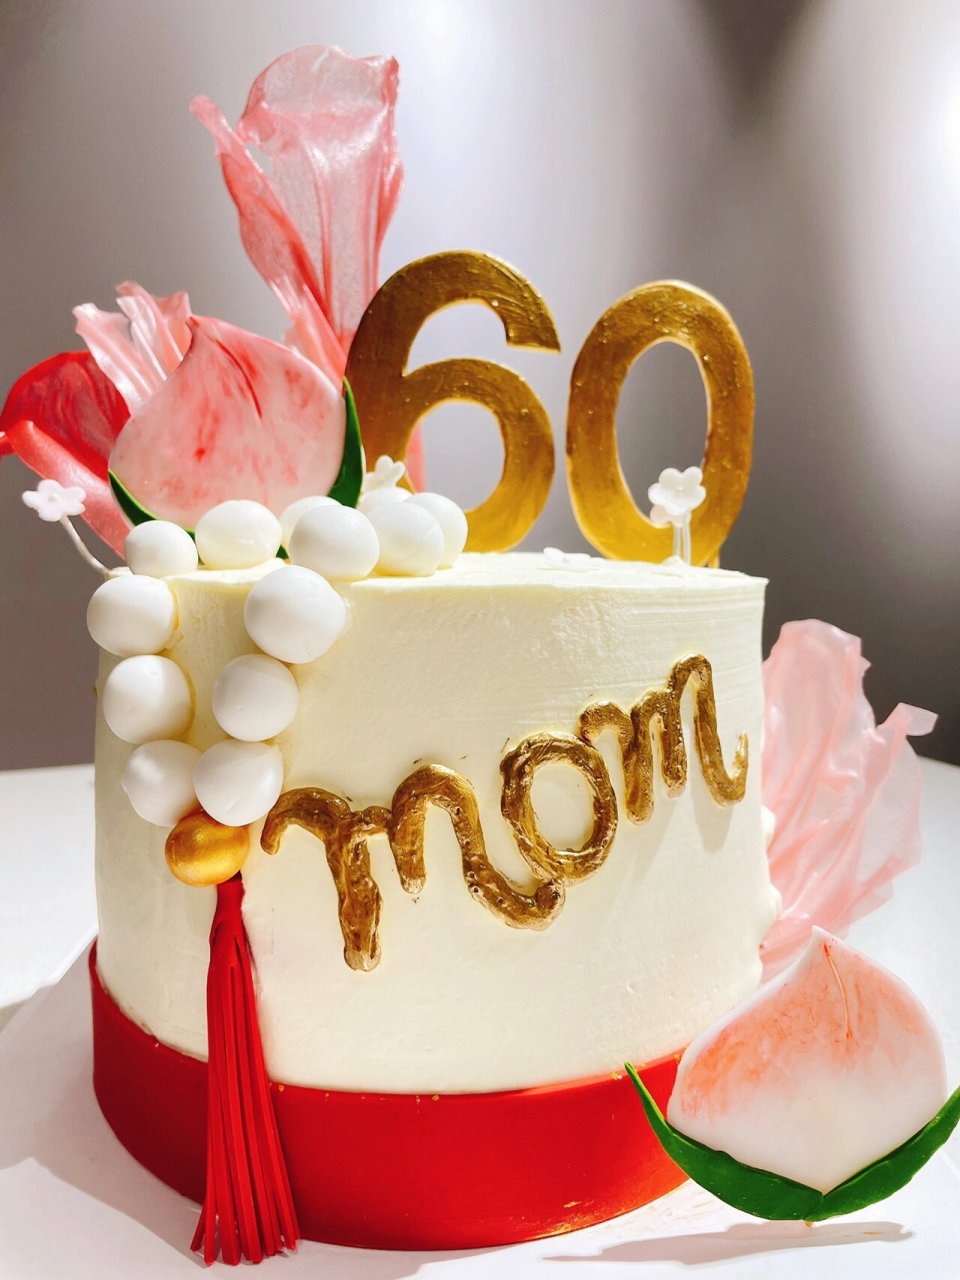 送妈妈的60岁蛋糕 一款比较有气质的蛋糕 送妈妈婆婆～ 60岁生日蛋糕